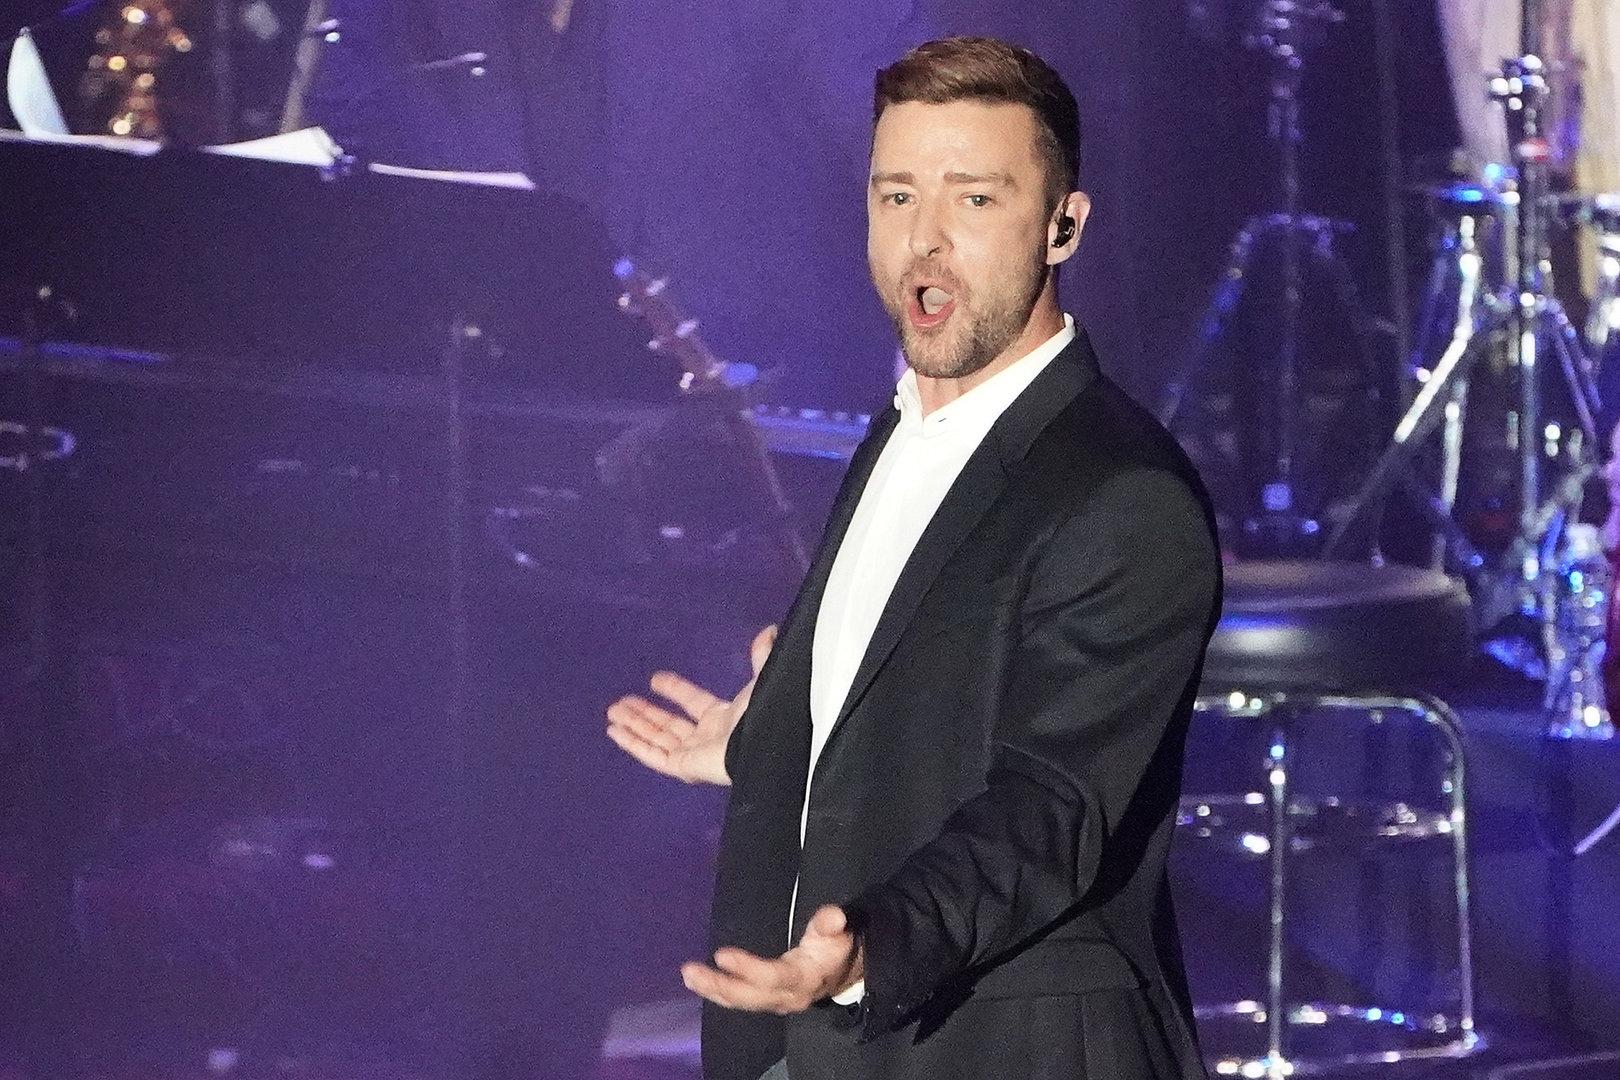 Unter Einfluss bei Aufritt? Besorgniserregendes Video von Justin Timberlake aufgetaucht